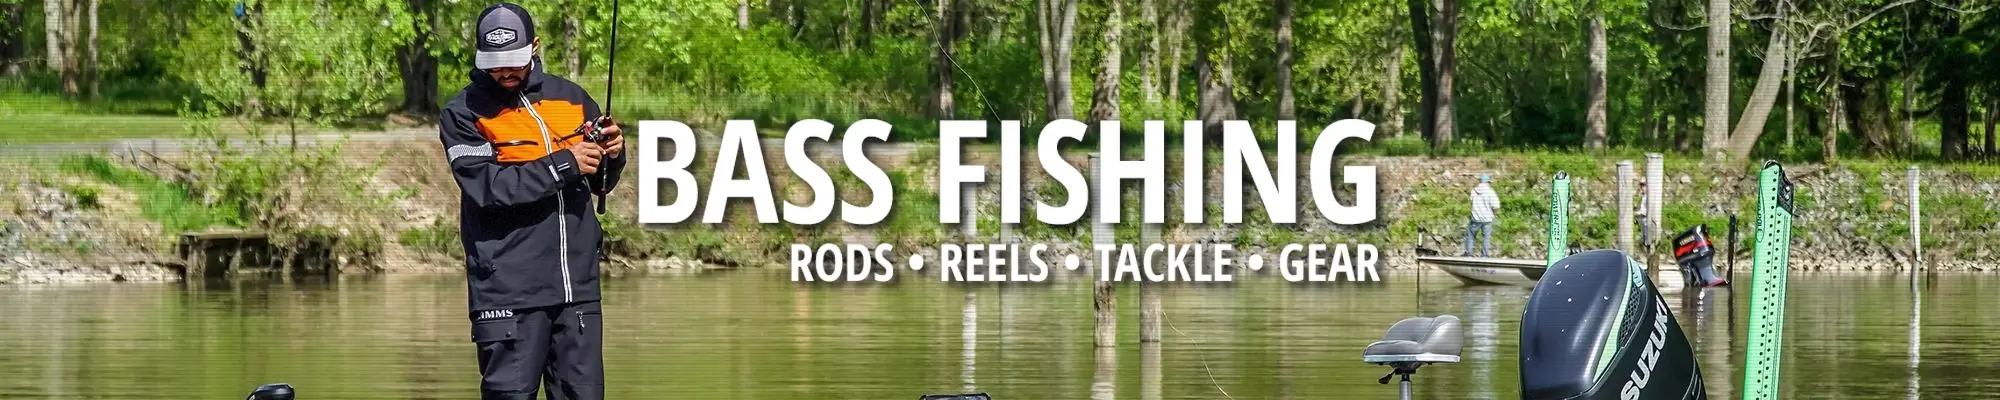 Bass Fishing Tackle